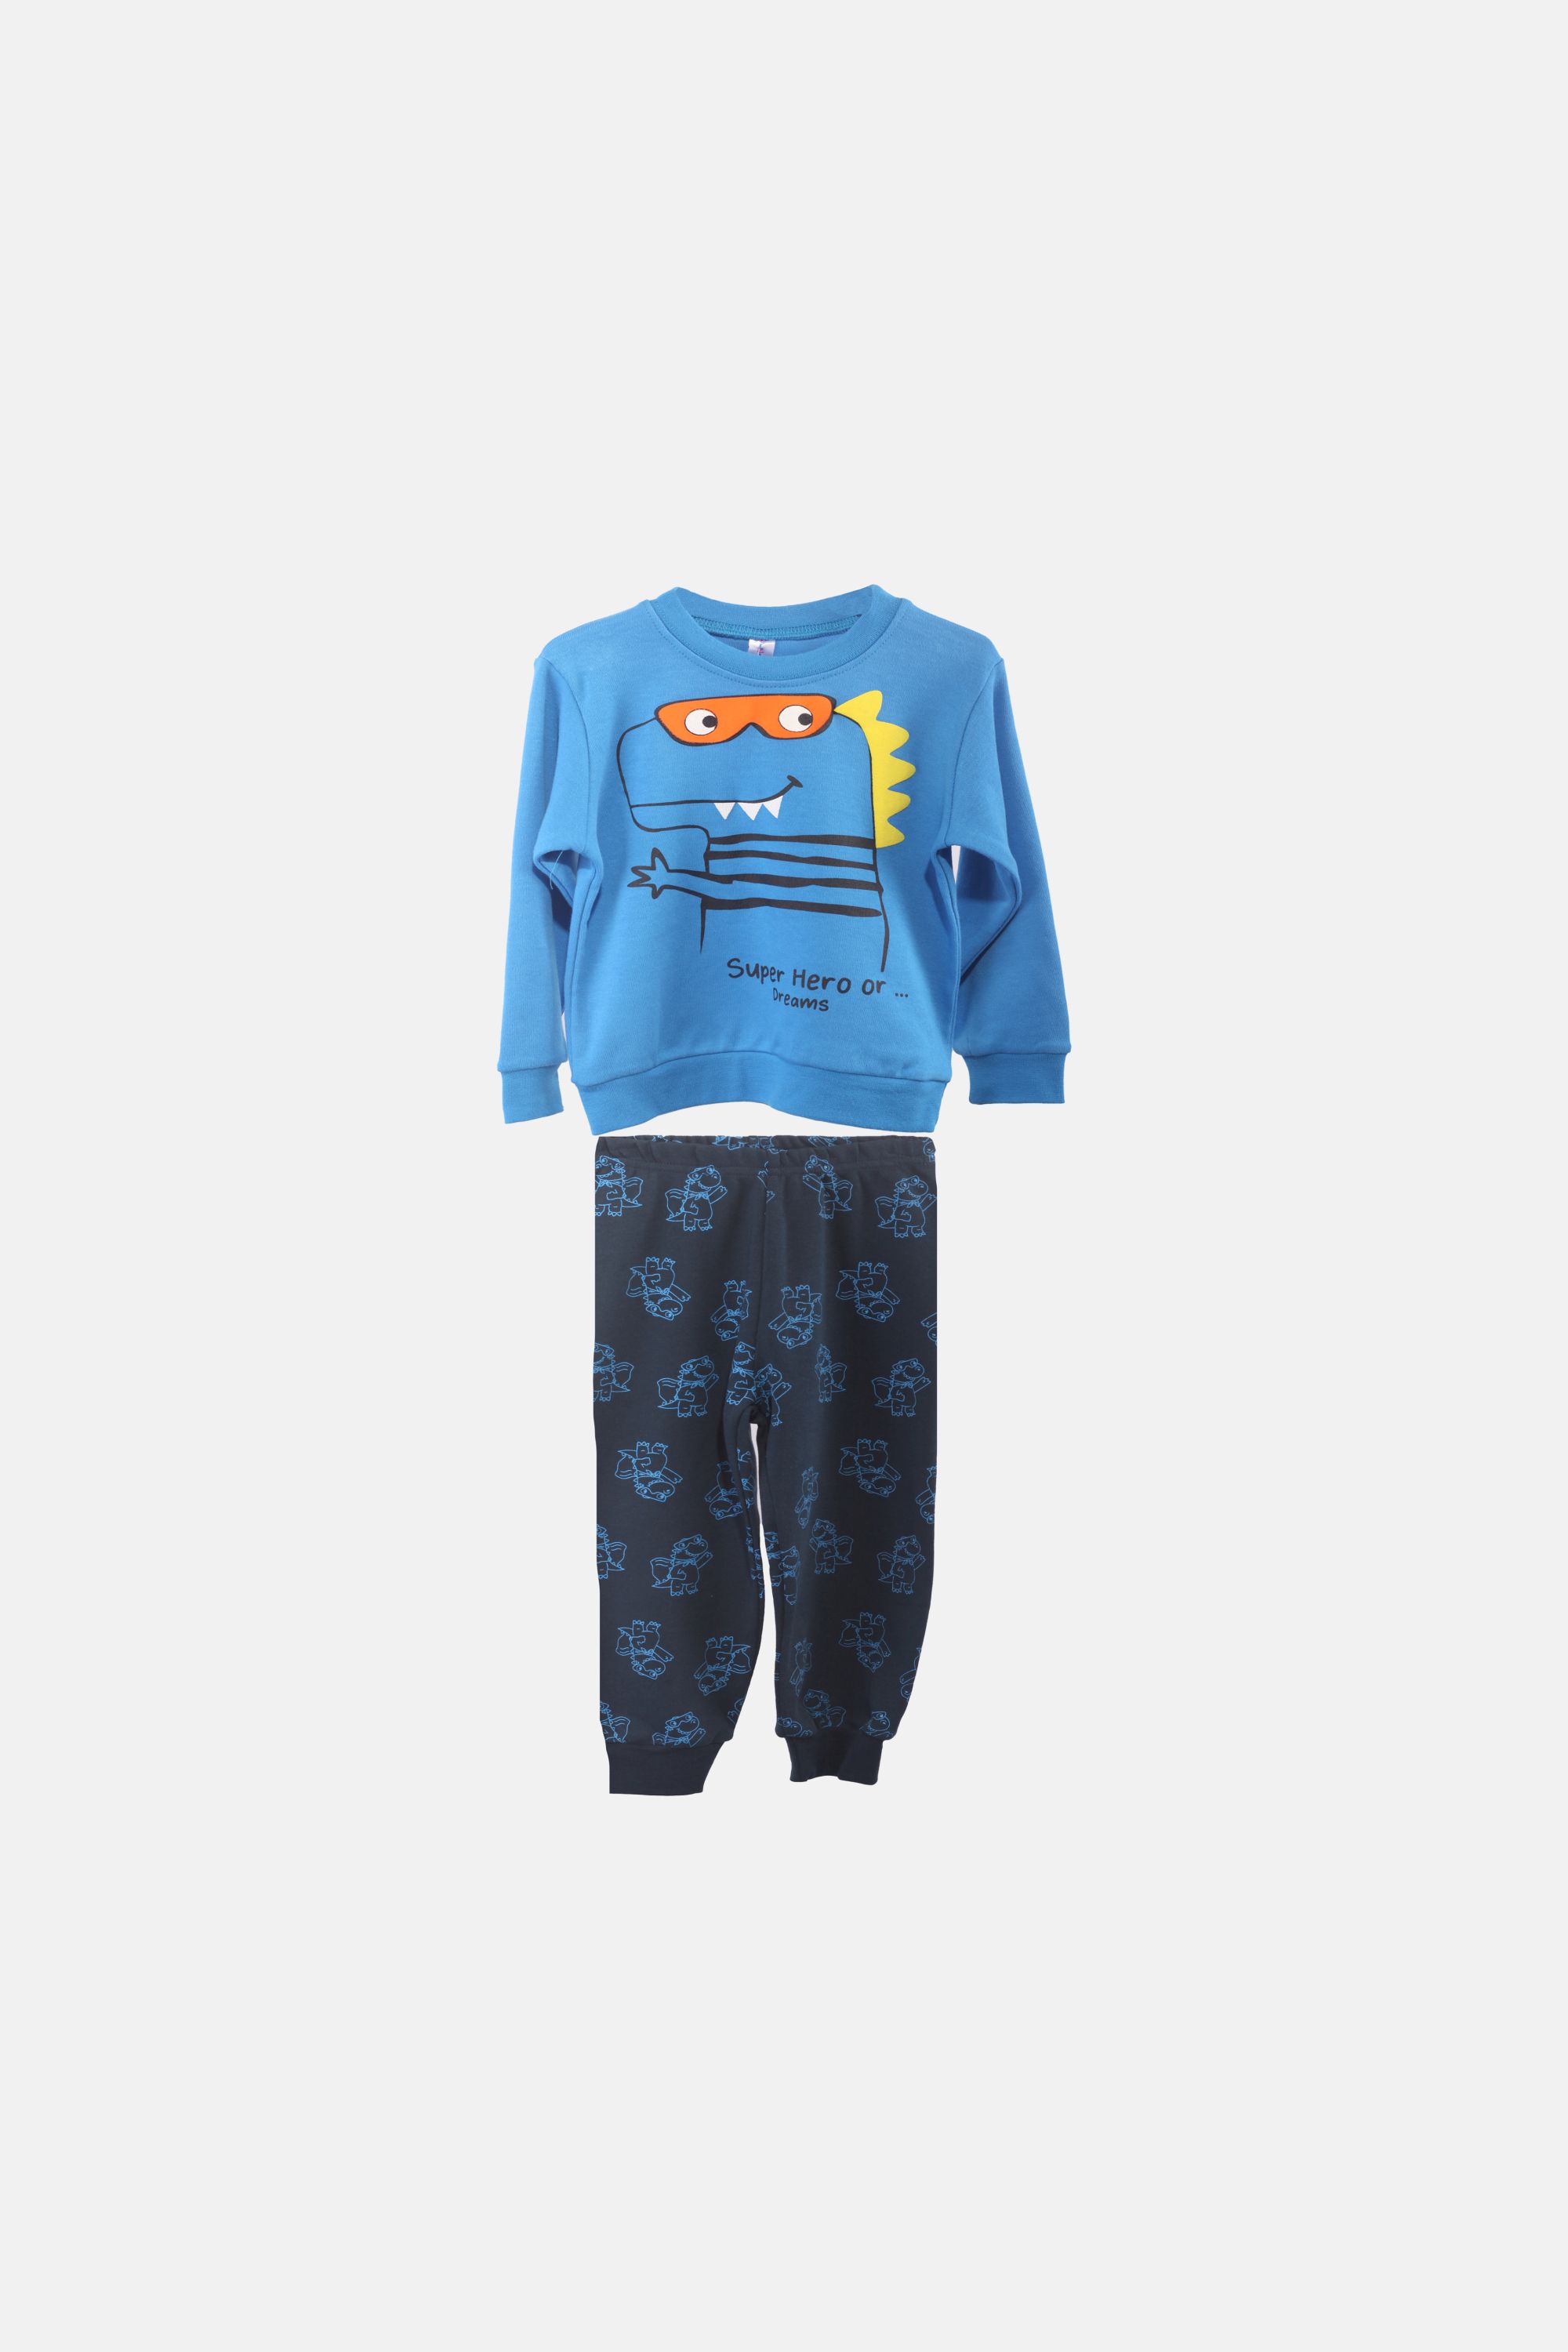 Chlapecké bavlněné pyžamo "DINO SET"/Modrá, petrolejová Barva: Modrá, Velikost: vel. 4 (100/108 cm)